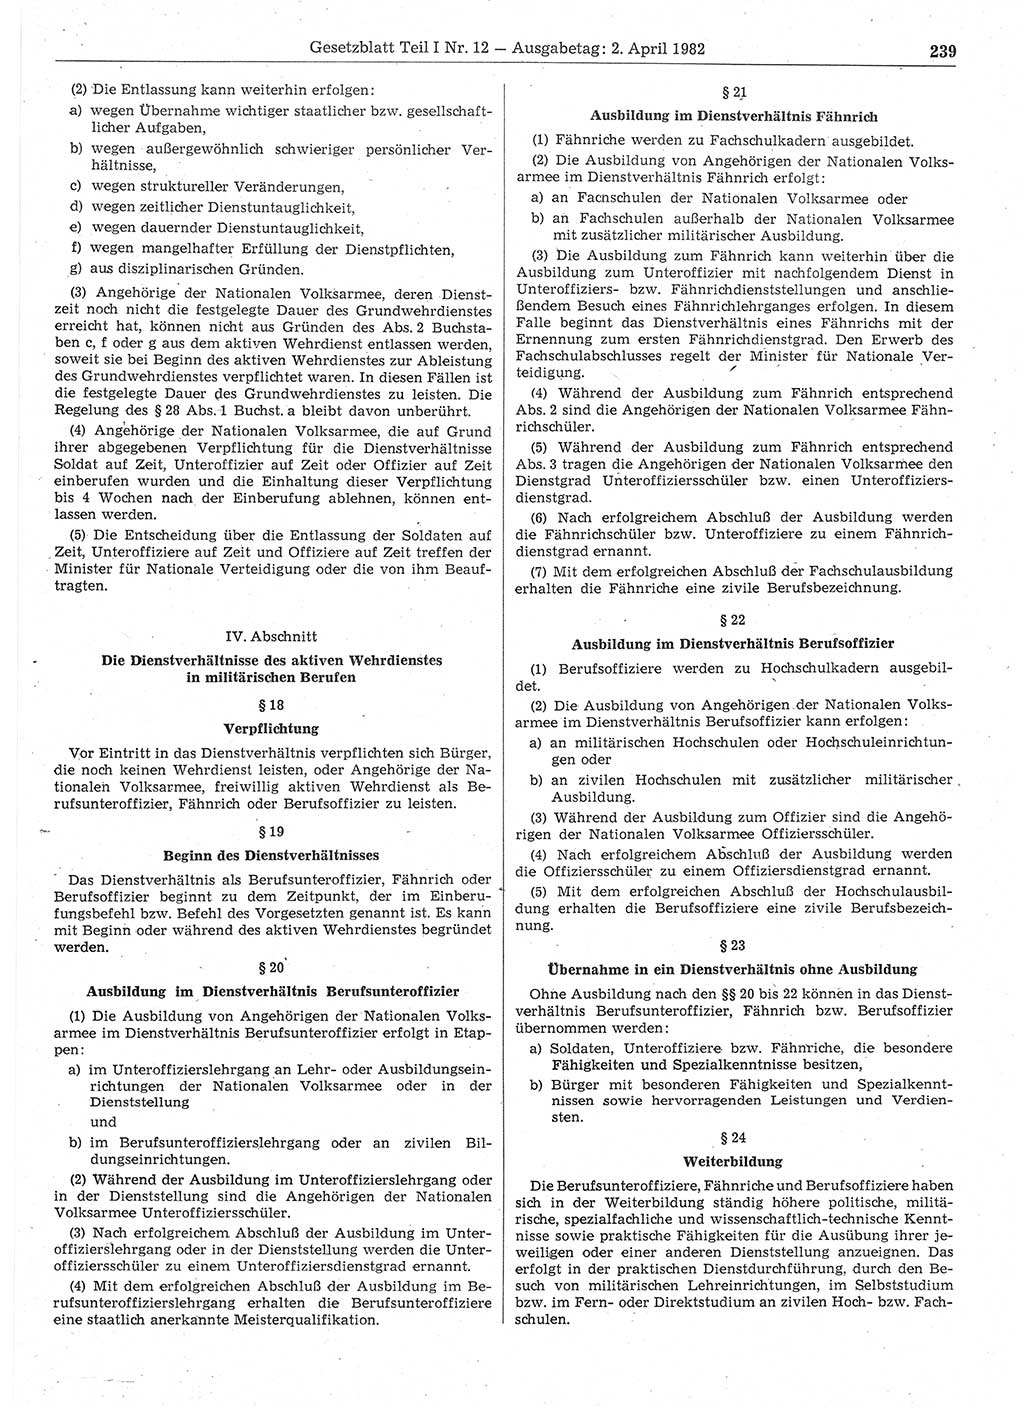 Gesetzblatt (GBl.) der Deutschen Demokratischen Republik (DDR) Teil Ⅰ 1982, Seite 239 (GBl. DDR Ⅰ 1982, S. 239)